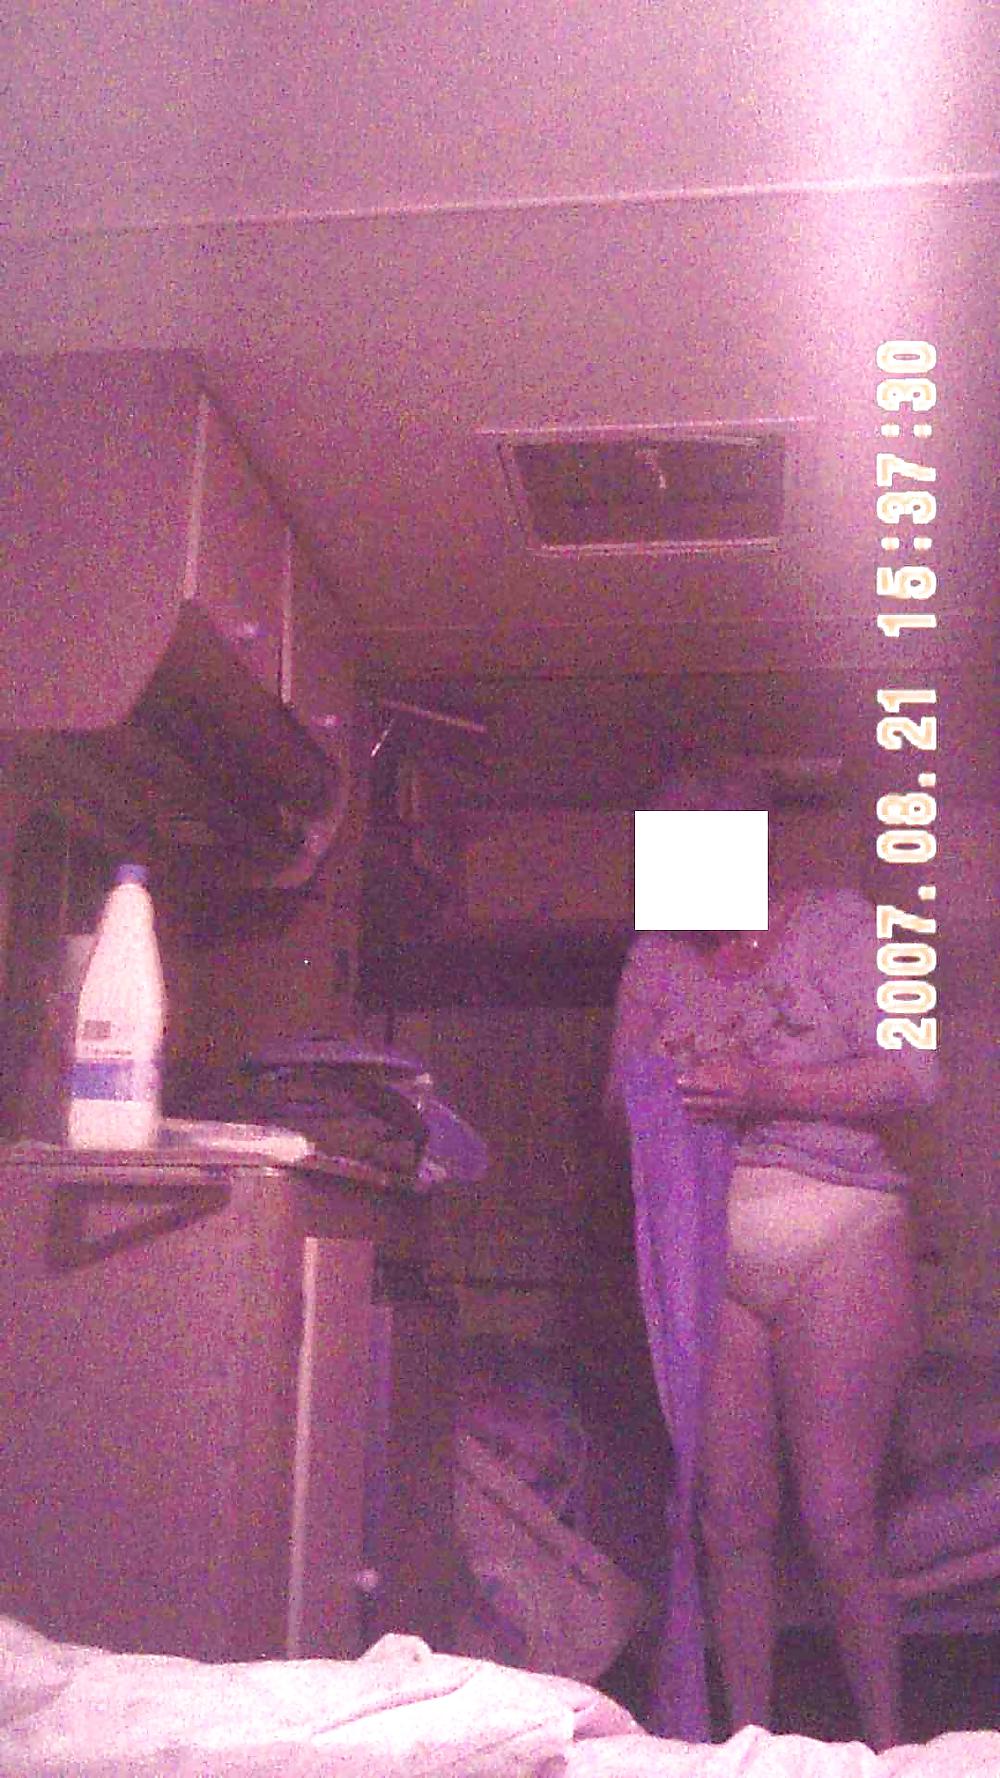 MIA SUOCERA FOTO TRATTE DA UN VIDEO - MY MOTHER IN LAW porn pictures